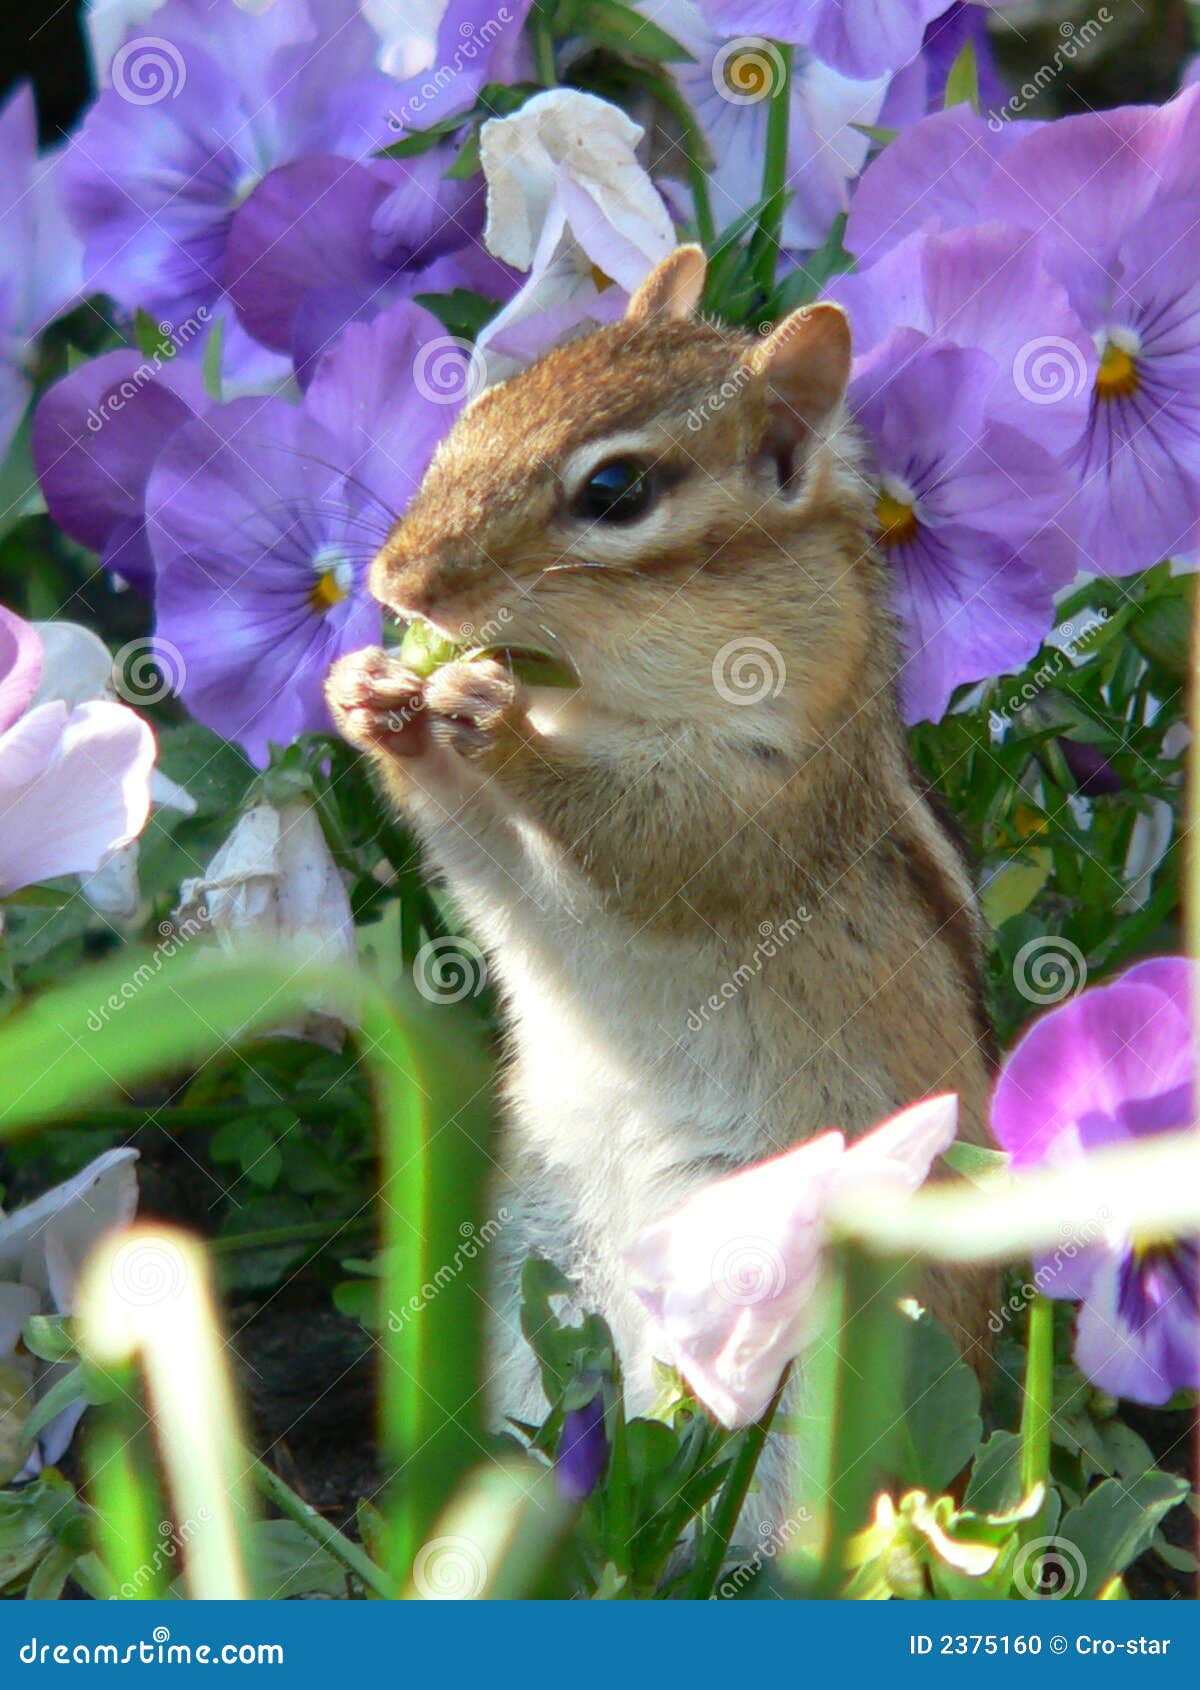 chipmunk in flowers